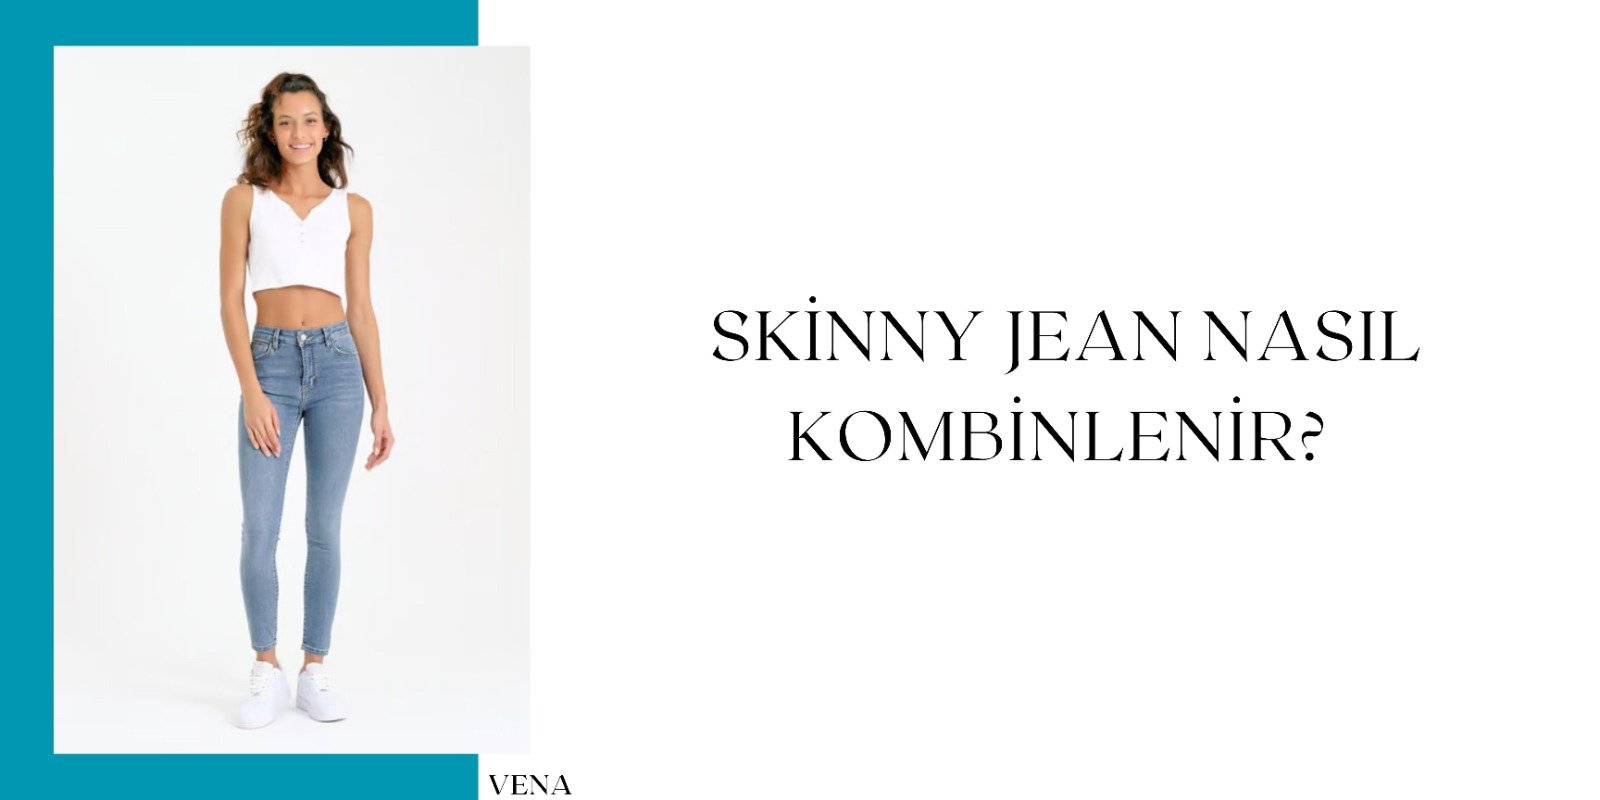 skinny jean, vena jeans, skinny jean modelleri